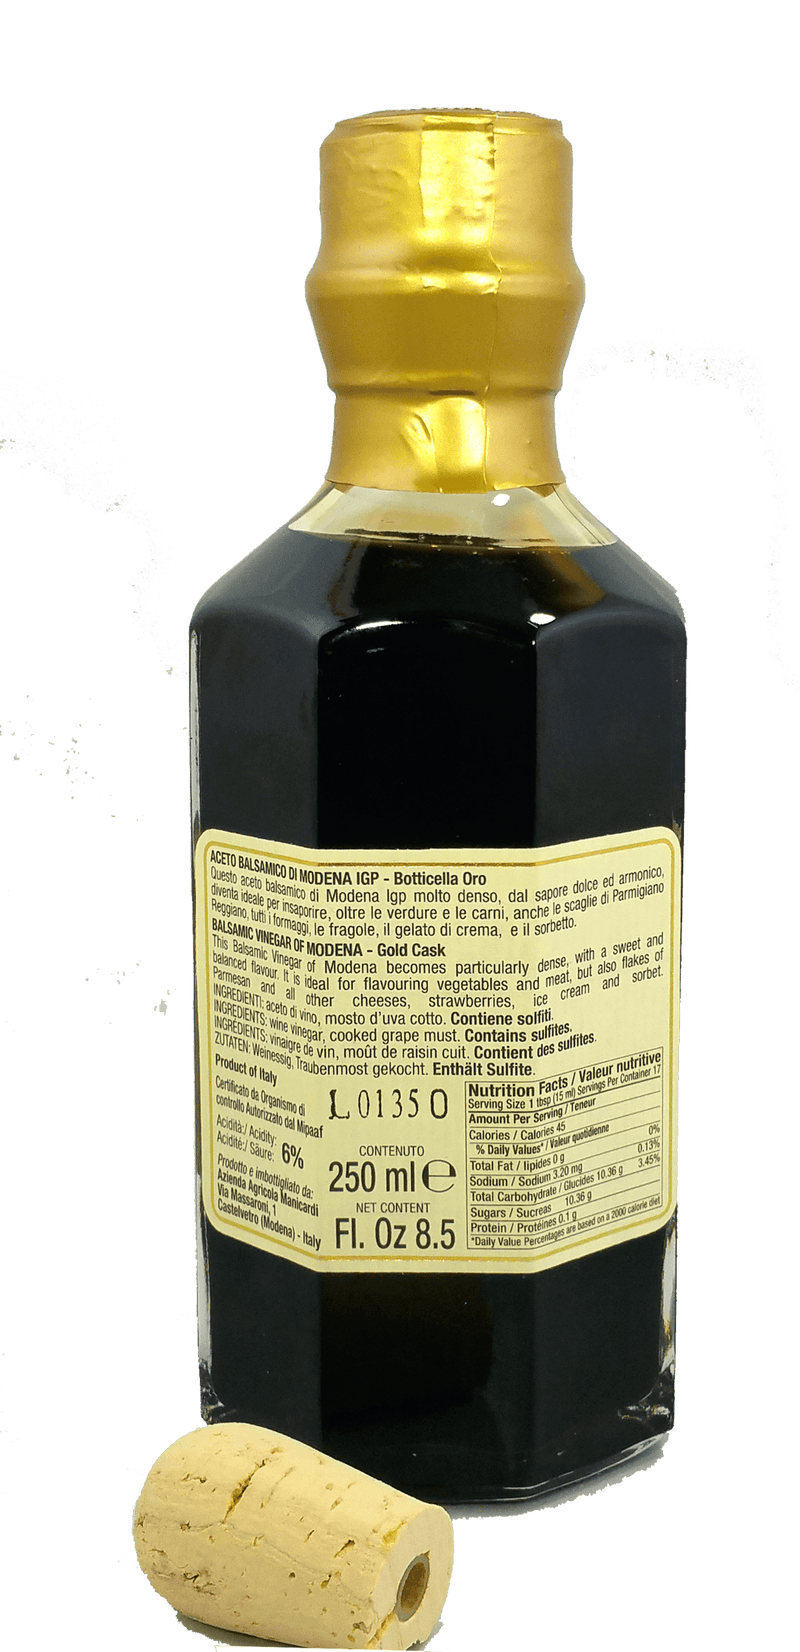 Manicardi Botticella Oro Balsamic Vinegar of Modena IGP - 250ml Oil & Vinegar Manicardi 